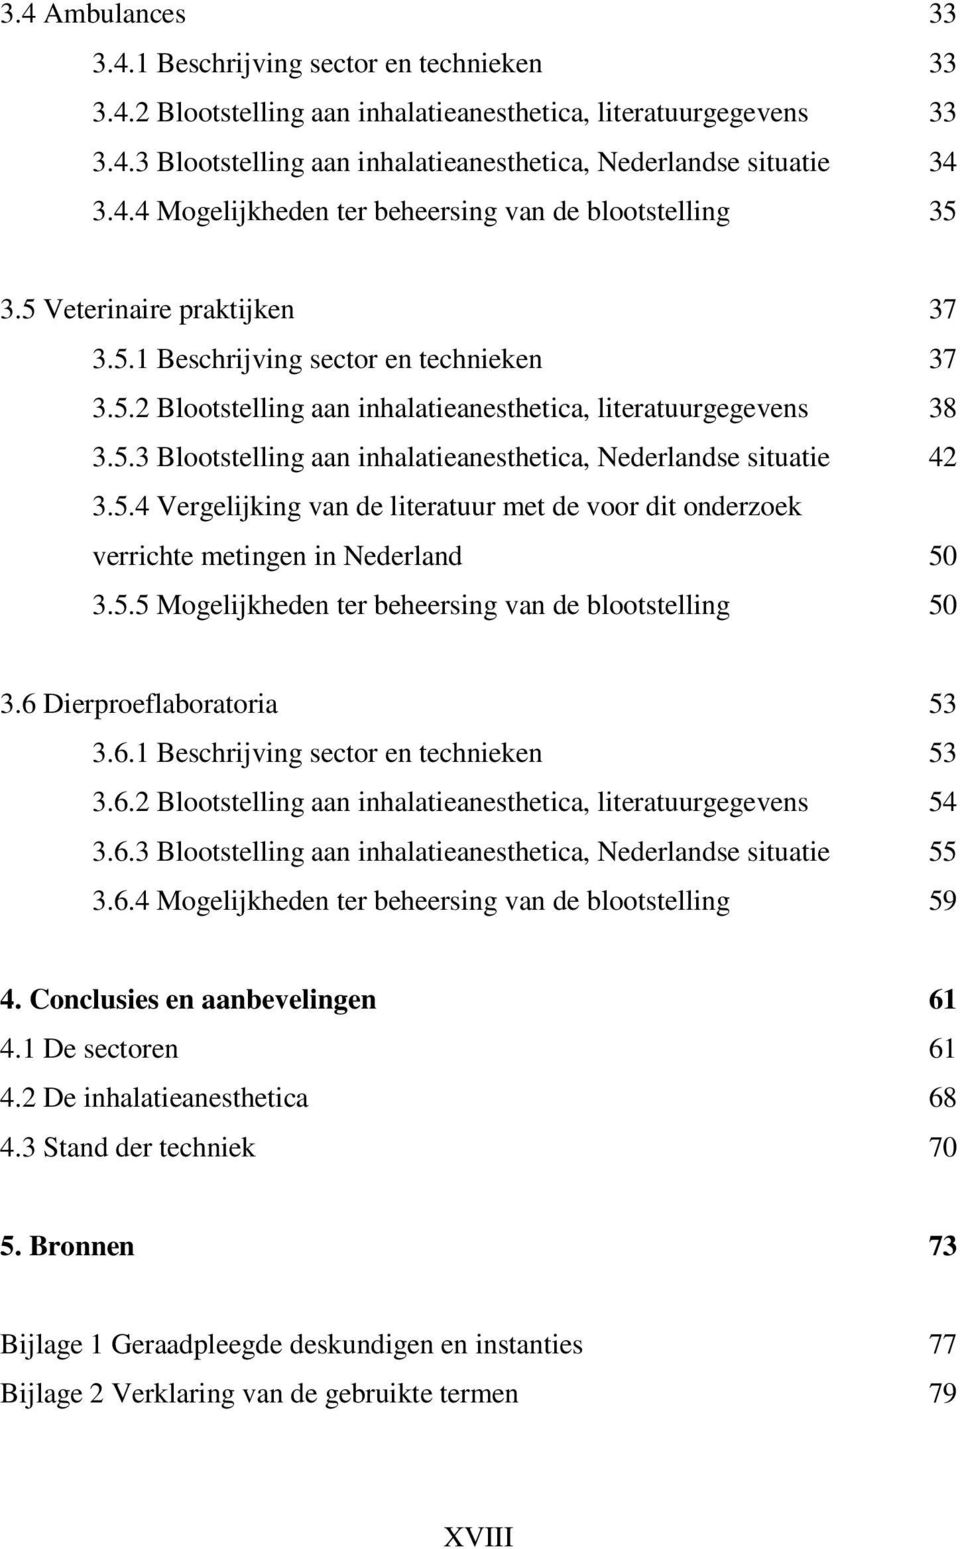 5.3 Blootstelling aan inhalatieanesthetica, Nederlandse situatie 42 3.5.4 Vergelijking van de literatuur met de voor dit onderzoek verrichte metingen in Nederland 50 3.5.5 Mogelijkheden ter beheersing van de blootstelling 50 3.